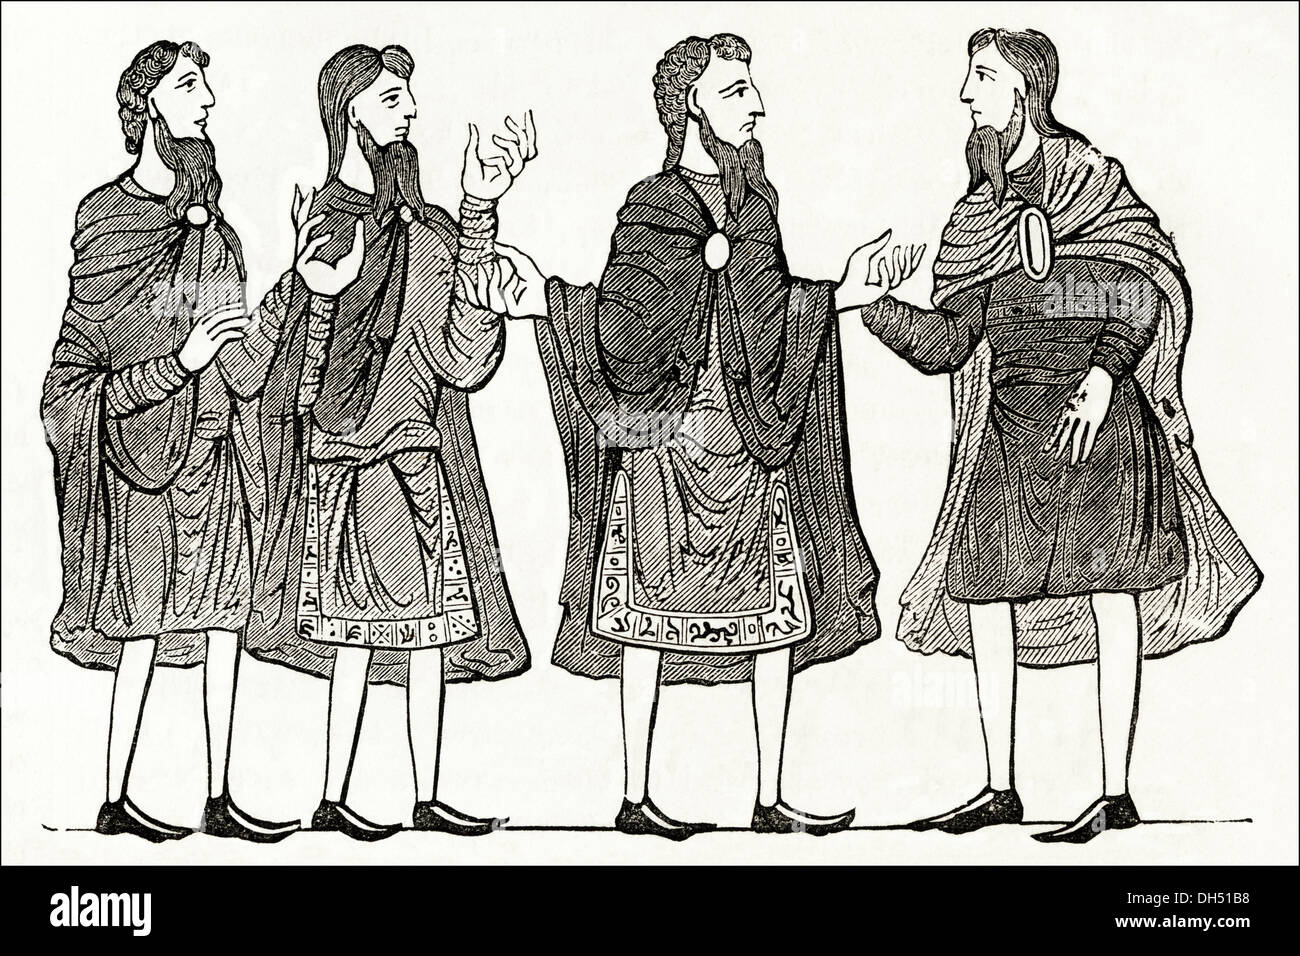 L'Angleterre anglo-saxonne. Vie quotidienne mode de mens dans l'Angleterre anglo-saxonne. Circa 1845 gravure sur bois de l'époque victorienne. Banque D'Images